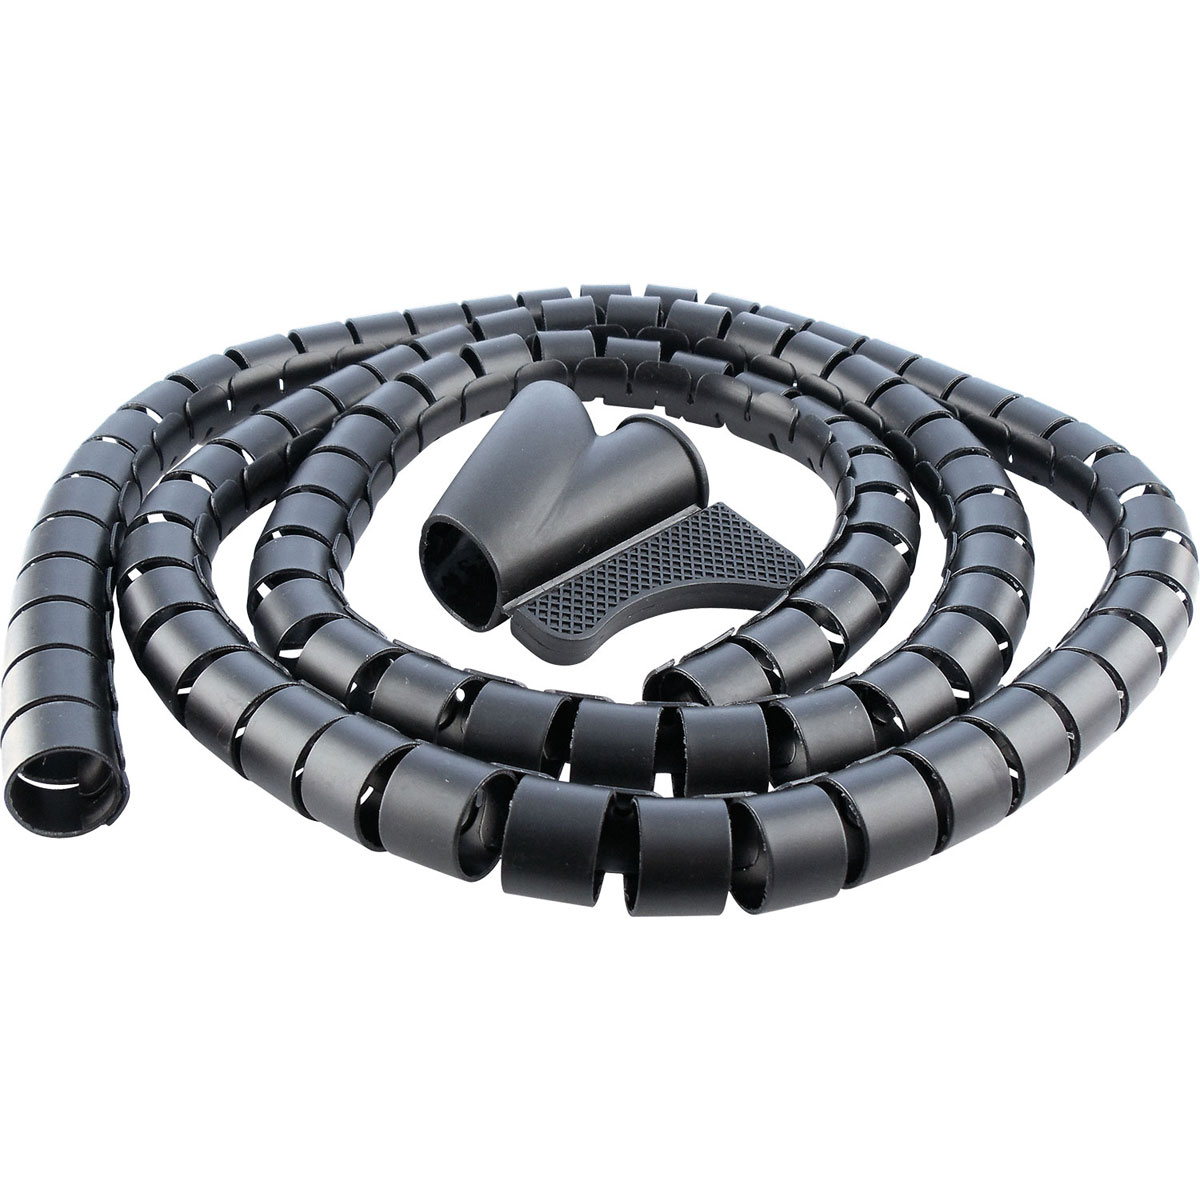 Schwaiger Kabelspiralschlauch Durchmesser 28 mm 1,5m schwarz